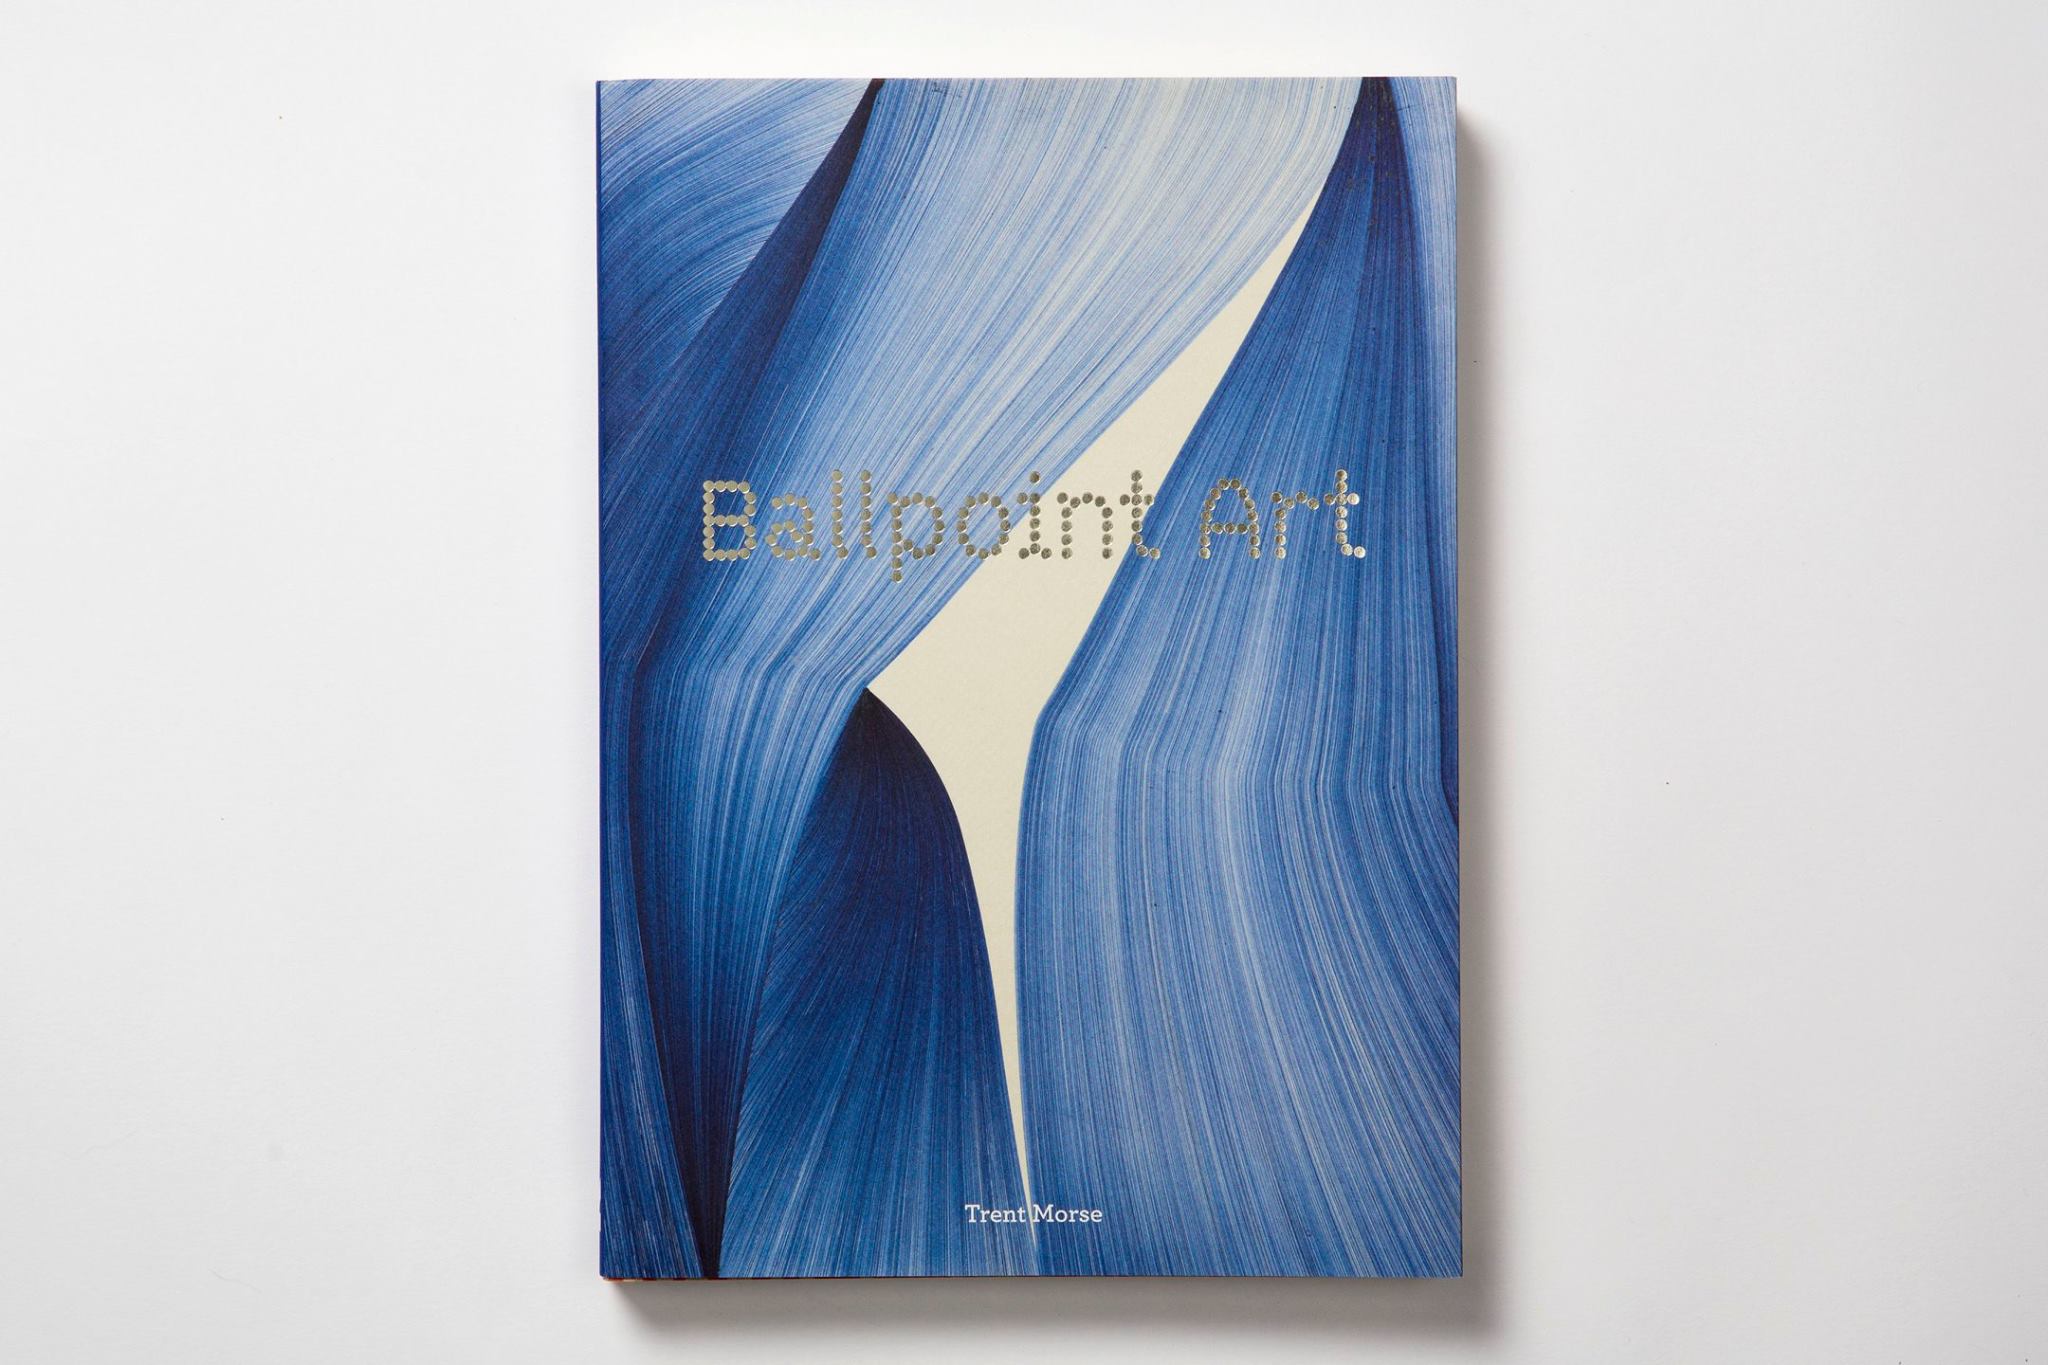 Trent Morse, “Ballpoint Art”, Laurence King, 2016